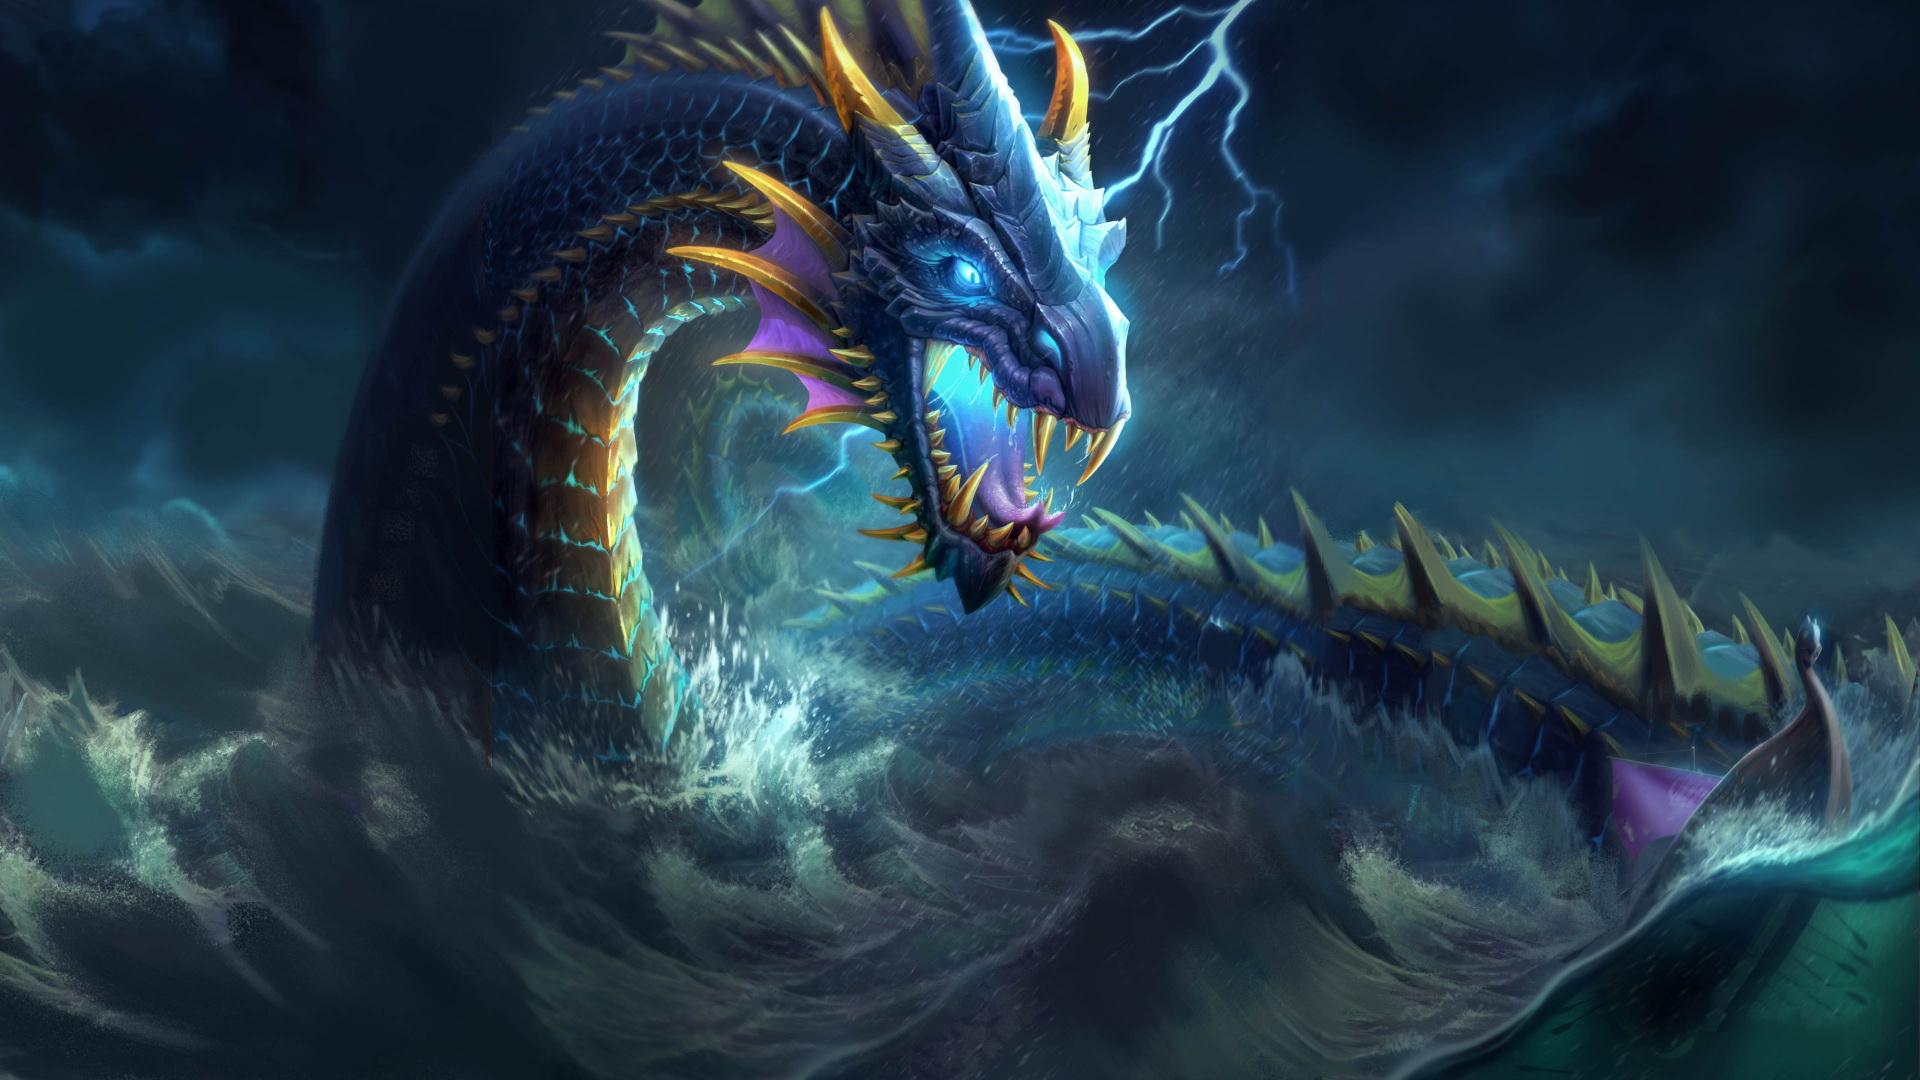 Dragon Beautiful Fantasy Creature Artwork Wallpaper